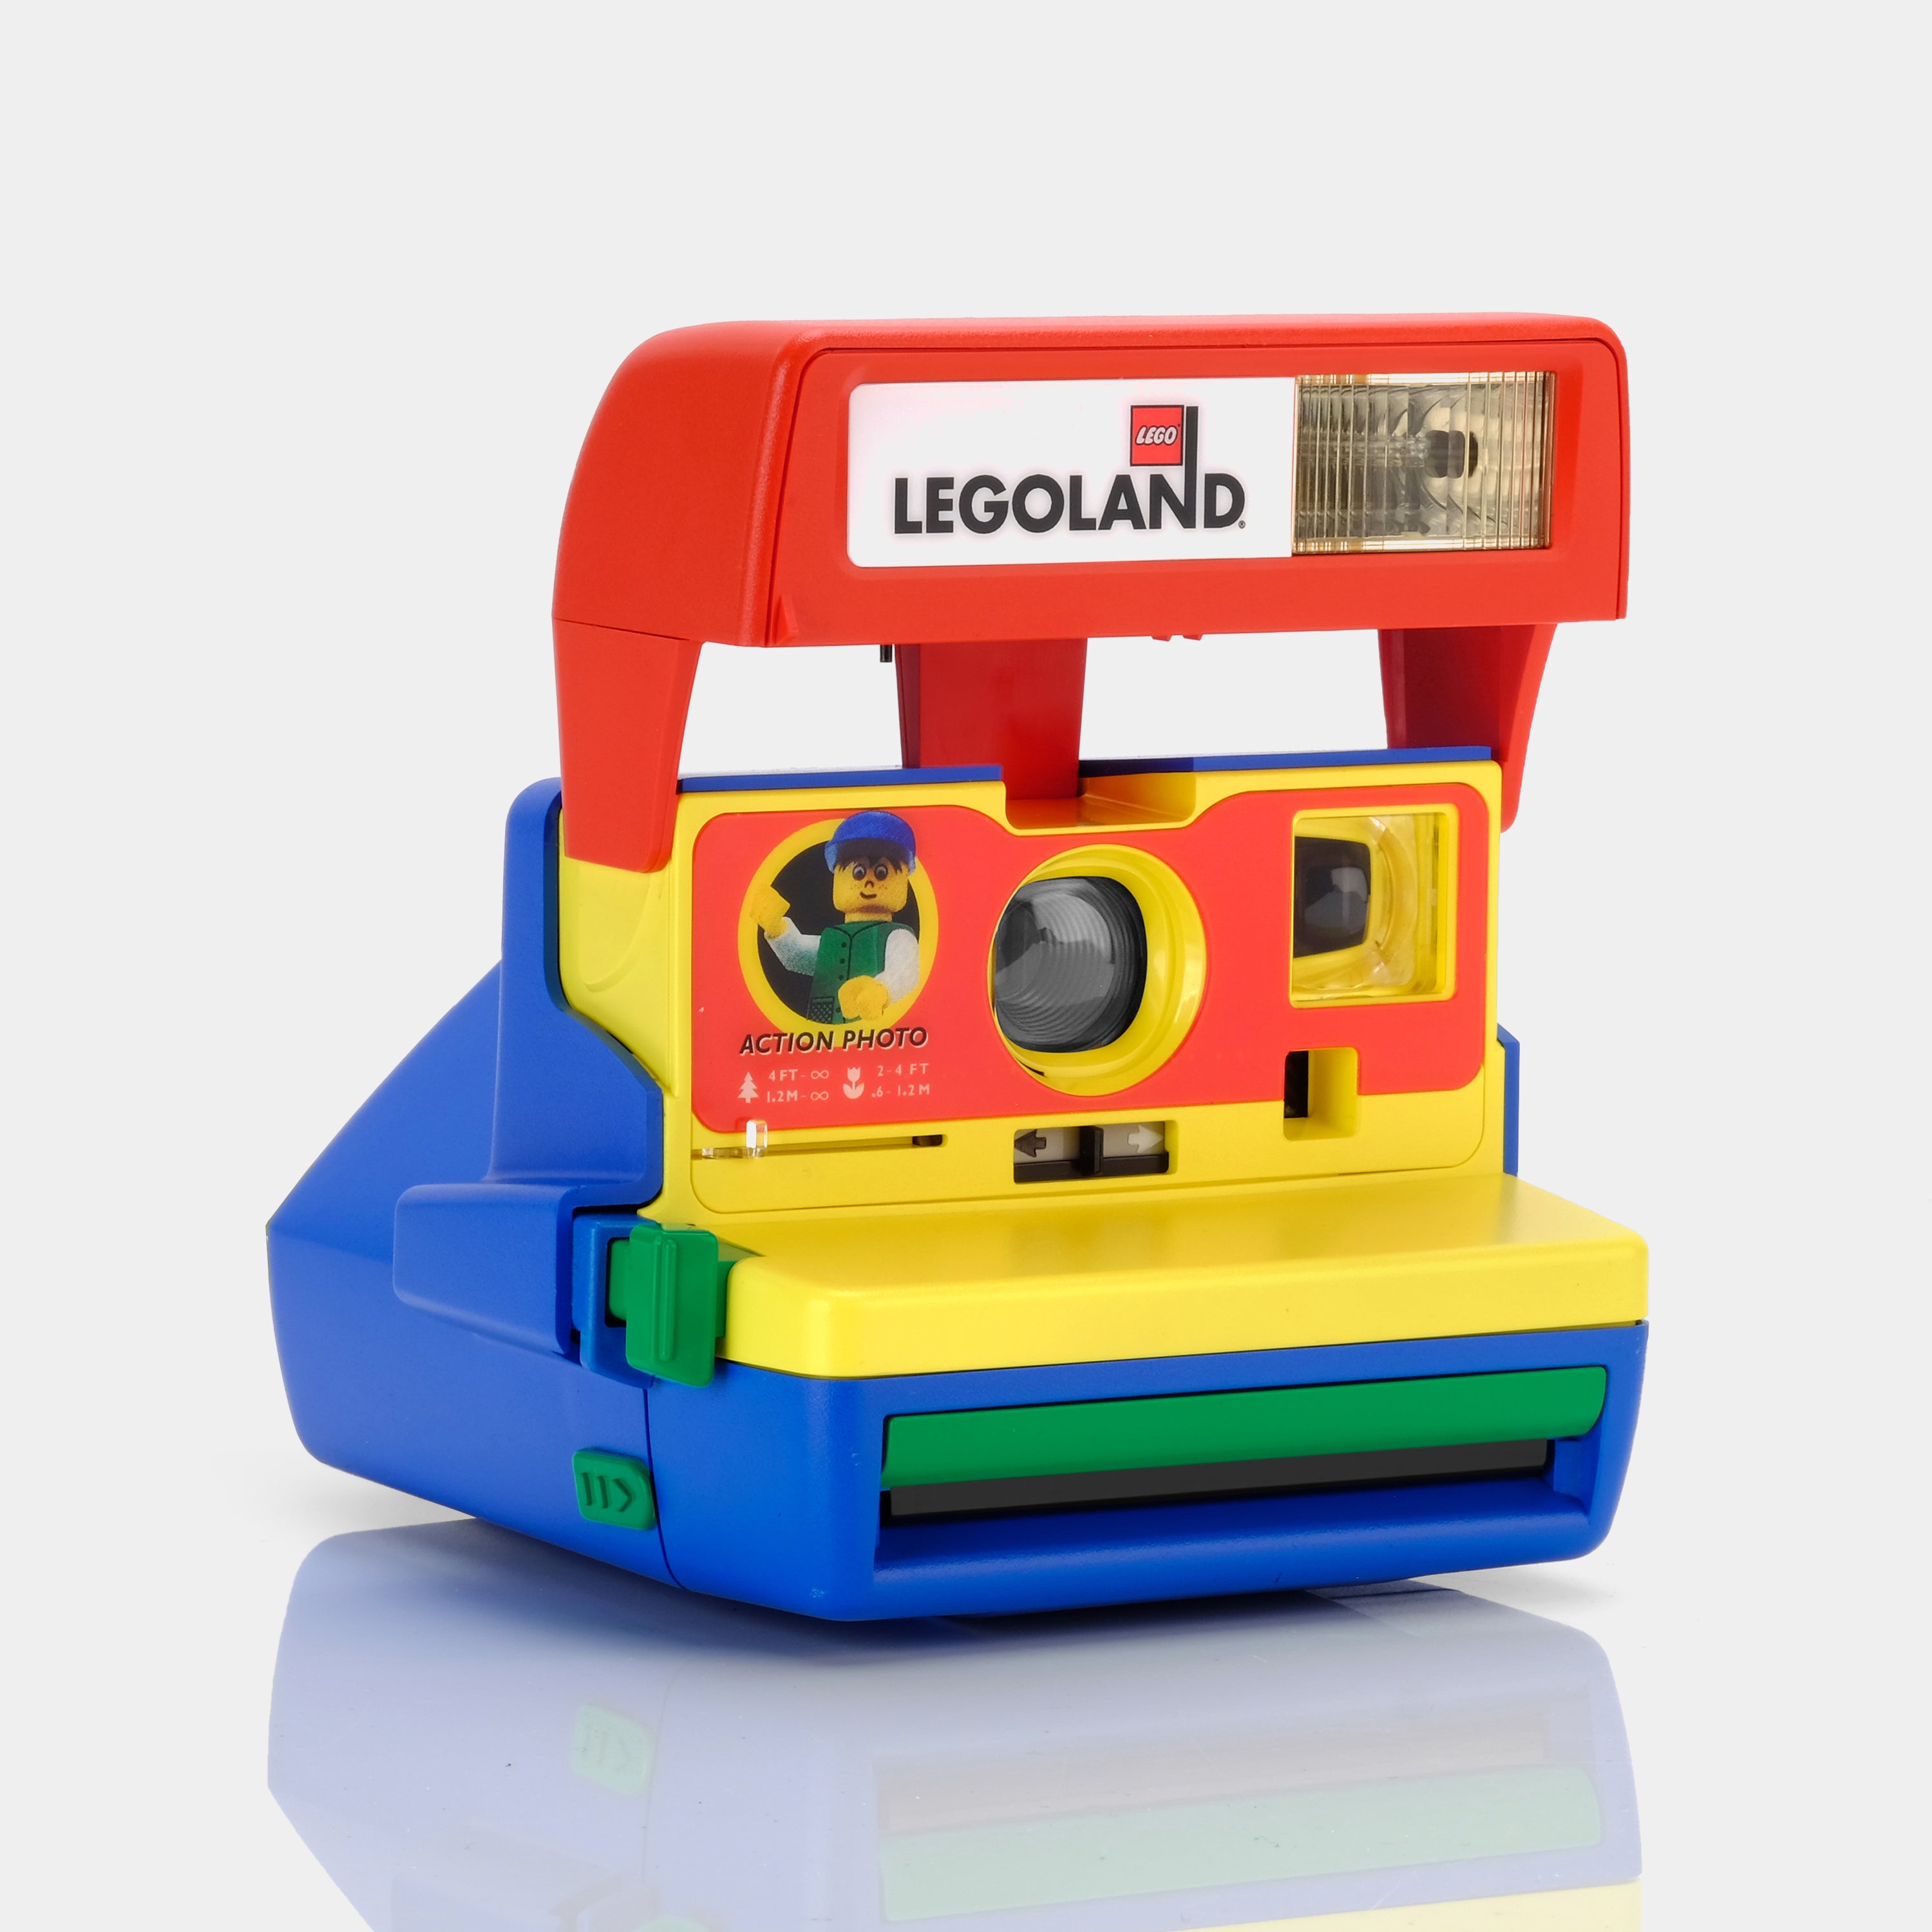 Polaroid 600 Lego Legoland Instant Film Camera